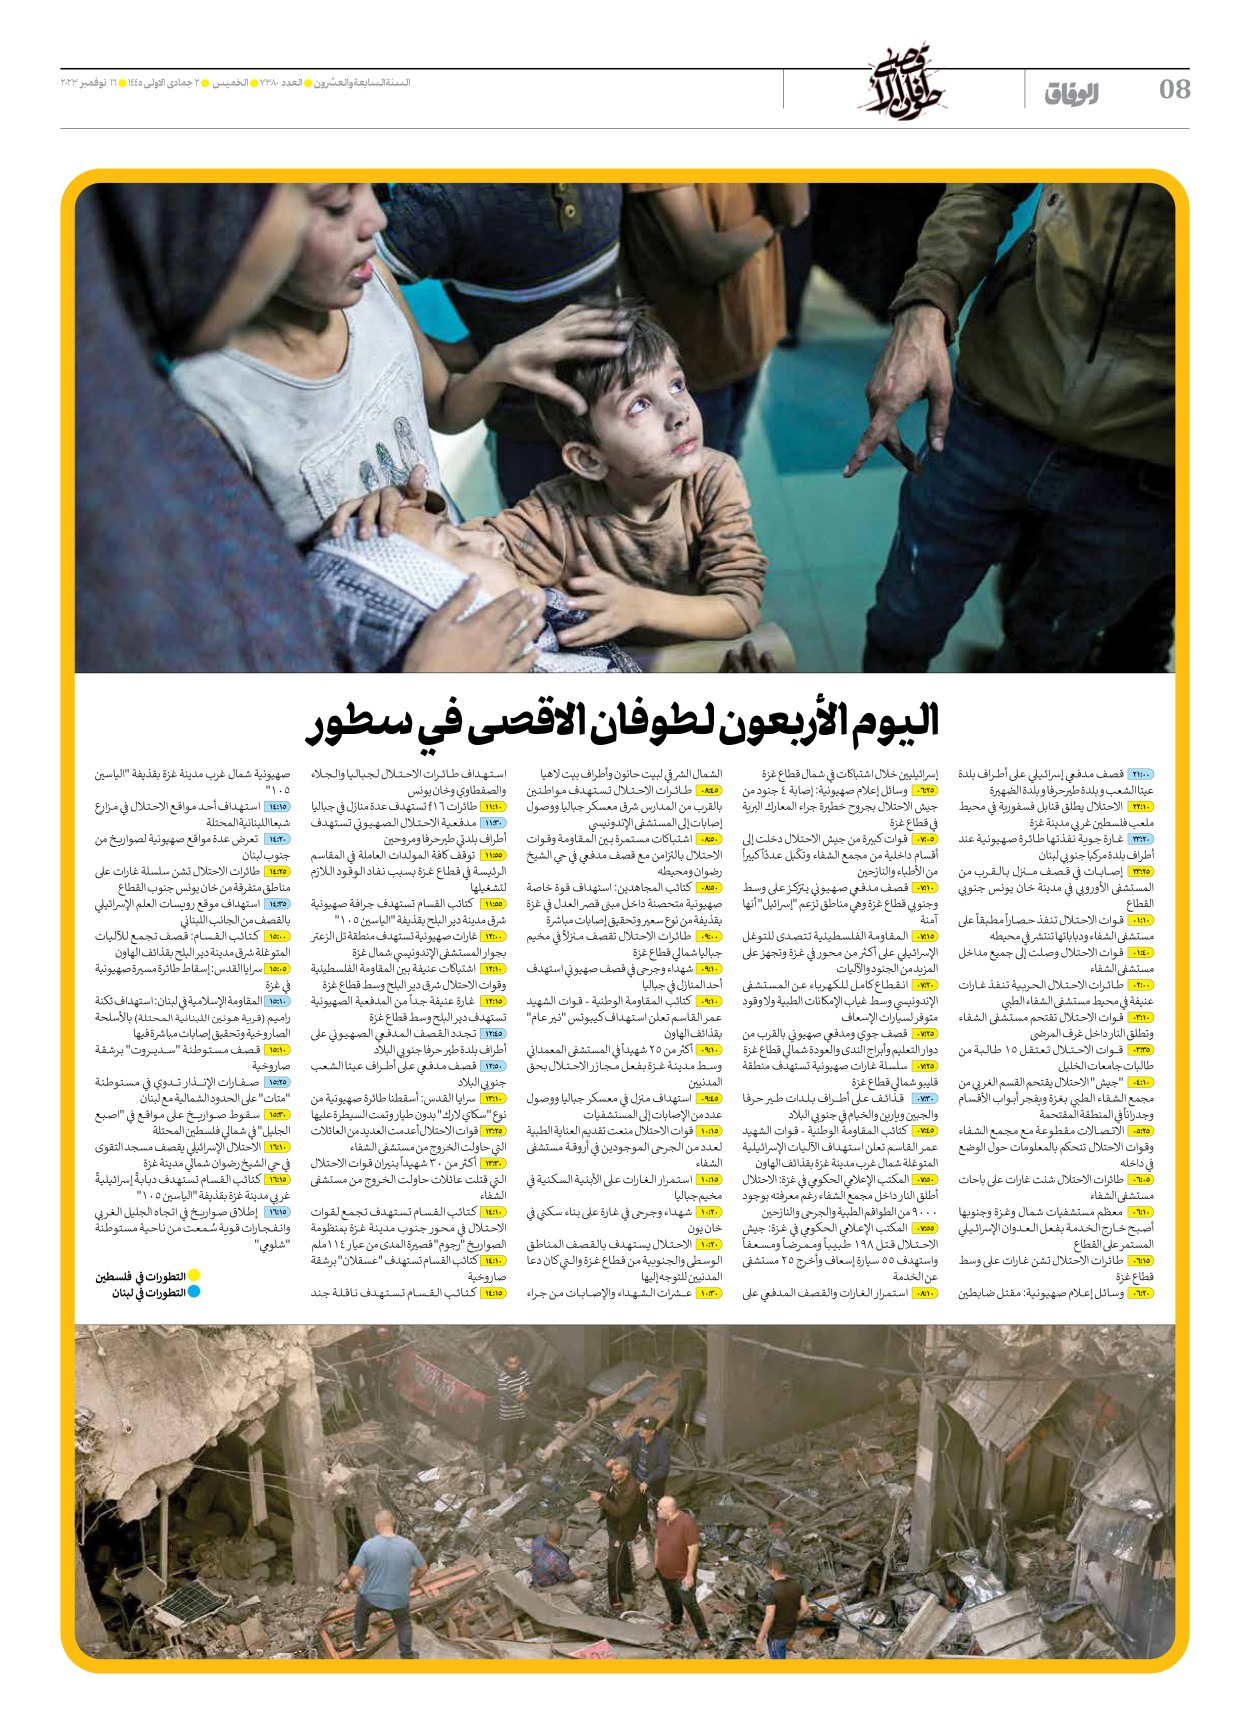 صحیفة ایران الدولیة الوفاق - العدد سبعة آلاف وثلاثمائة وثمانون - ١٦ نوفمبر ٢٠٢٣ - الصفحة ۸